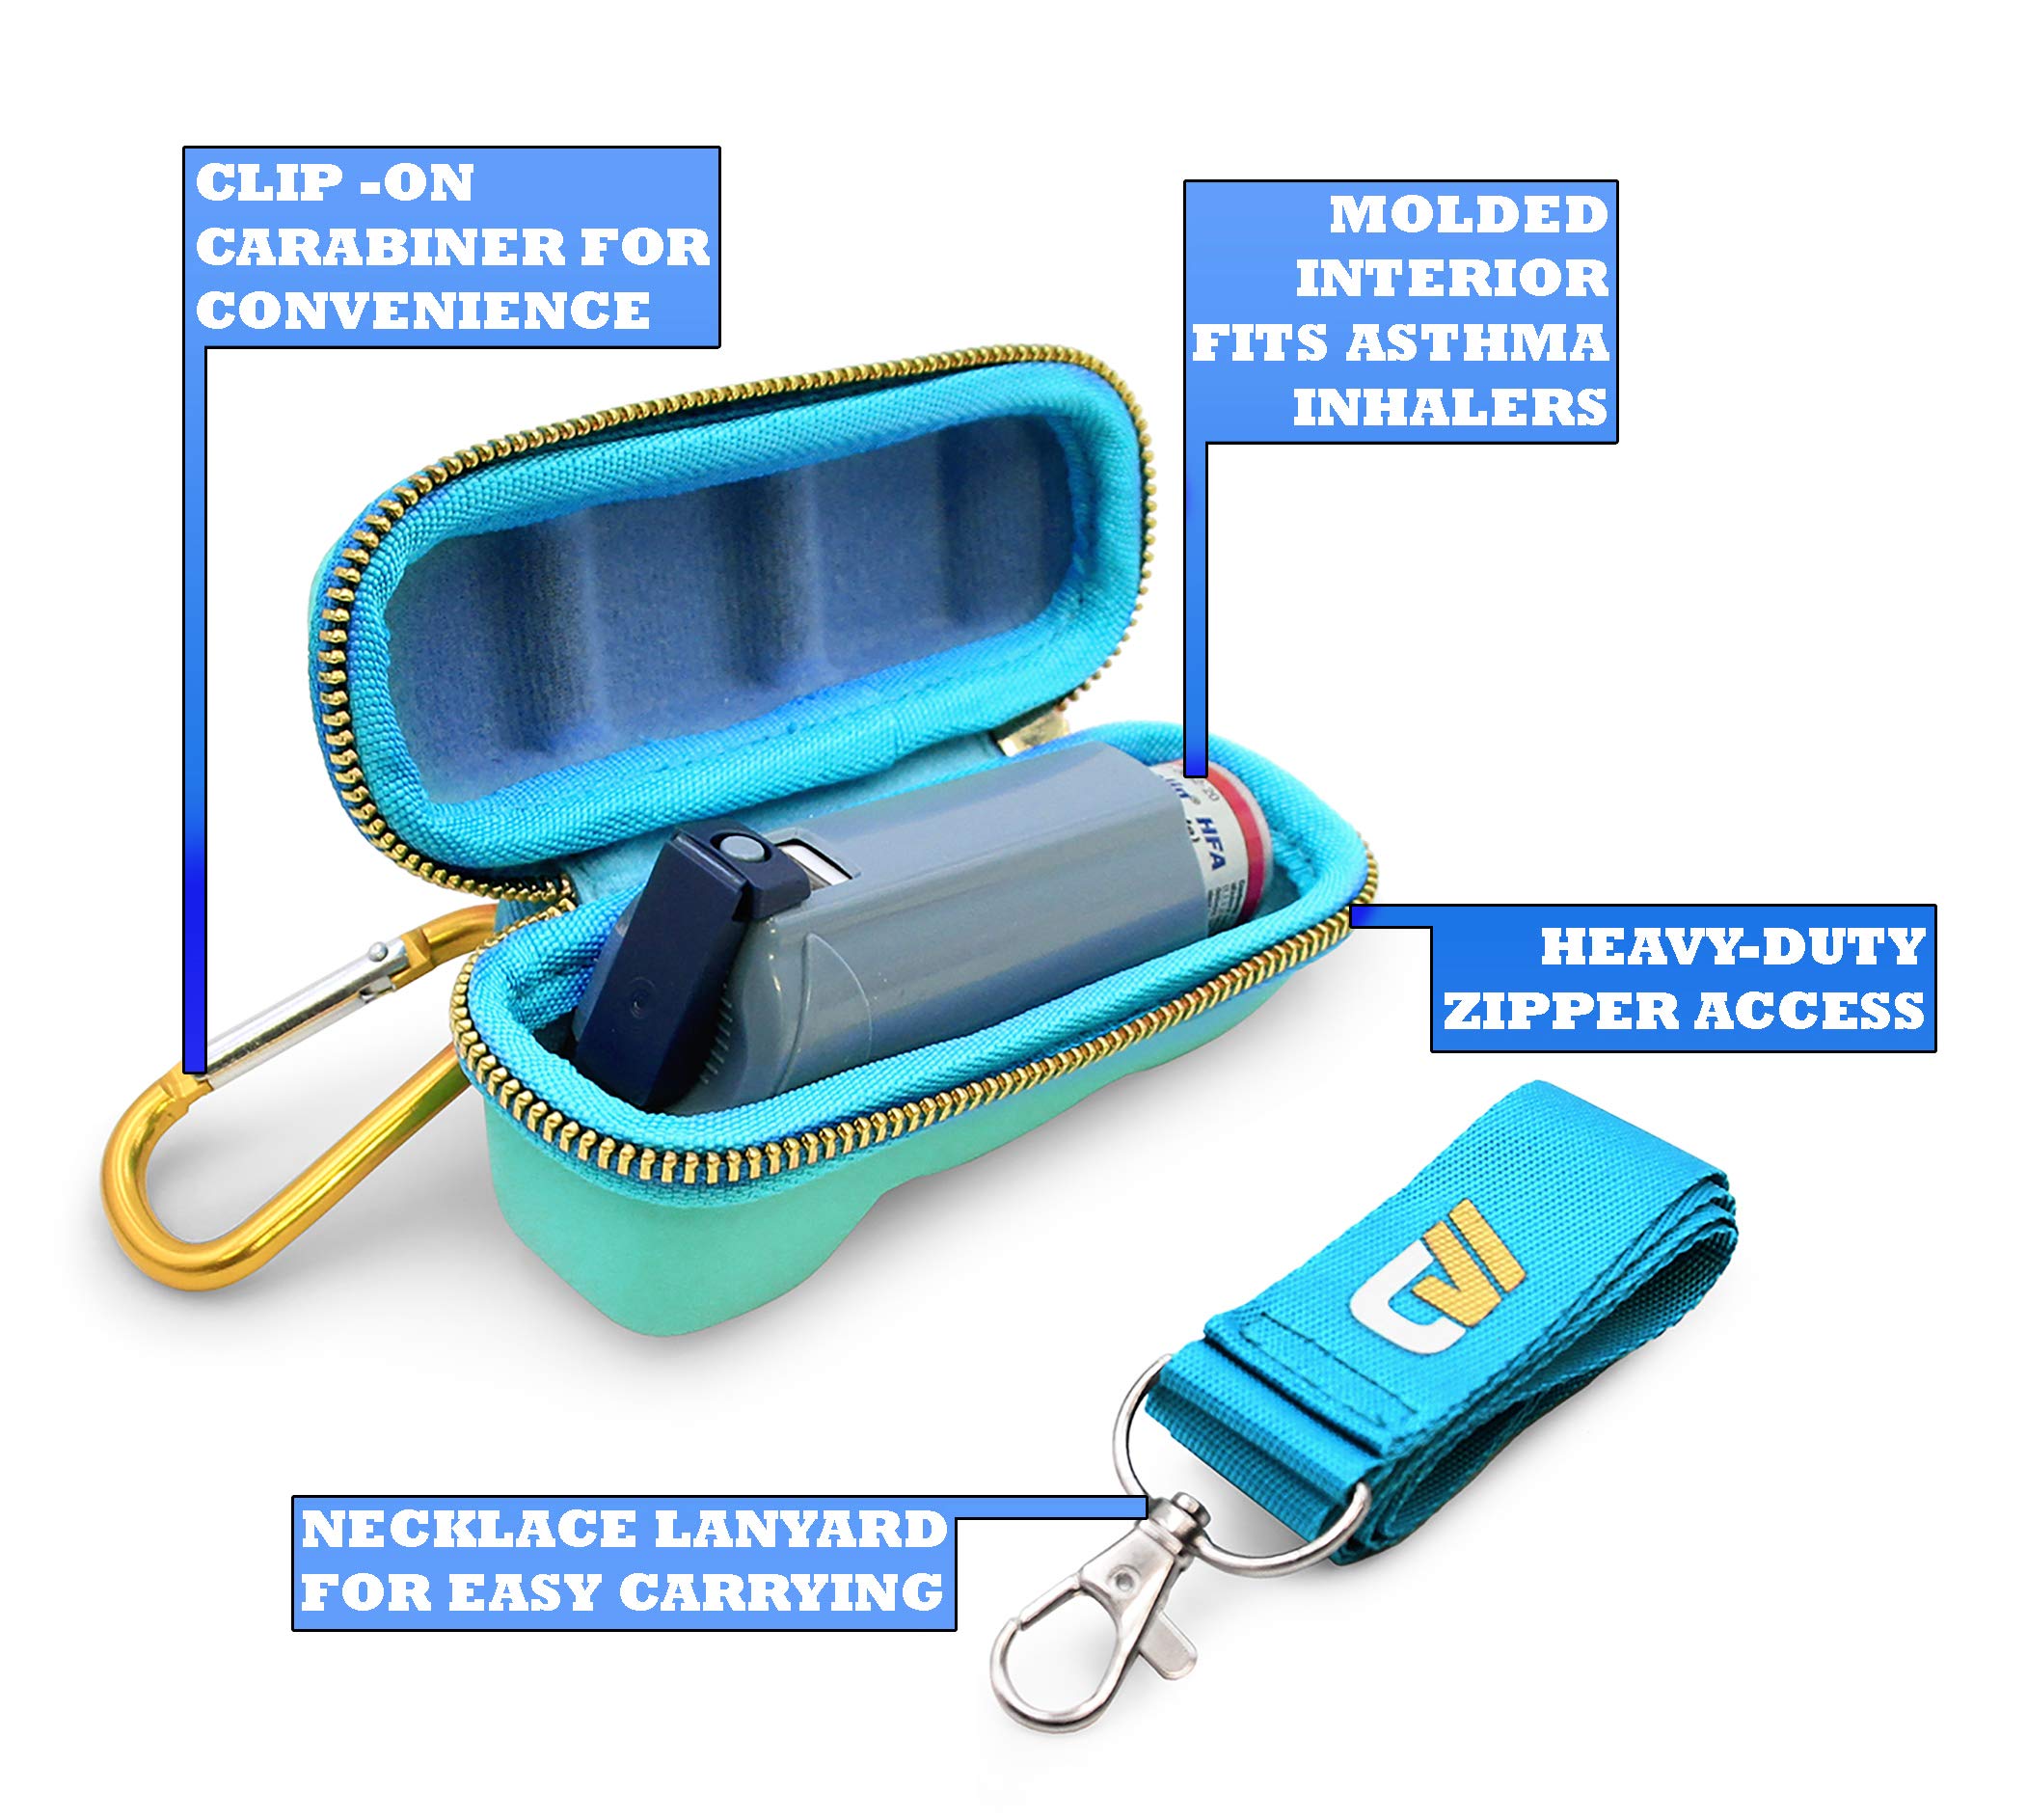 Casematix Turquoise Asthma Inhaler Travel Case, Does Not Include Inhaler Medicine